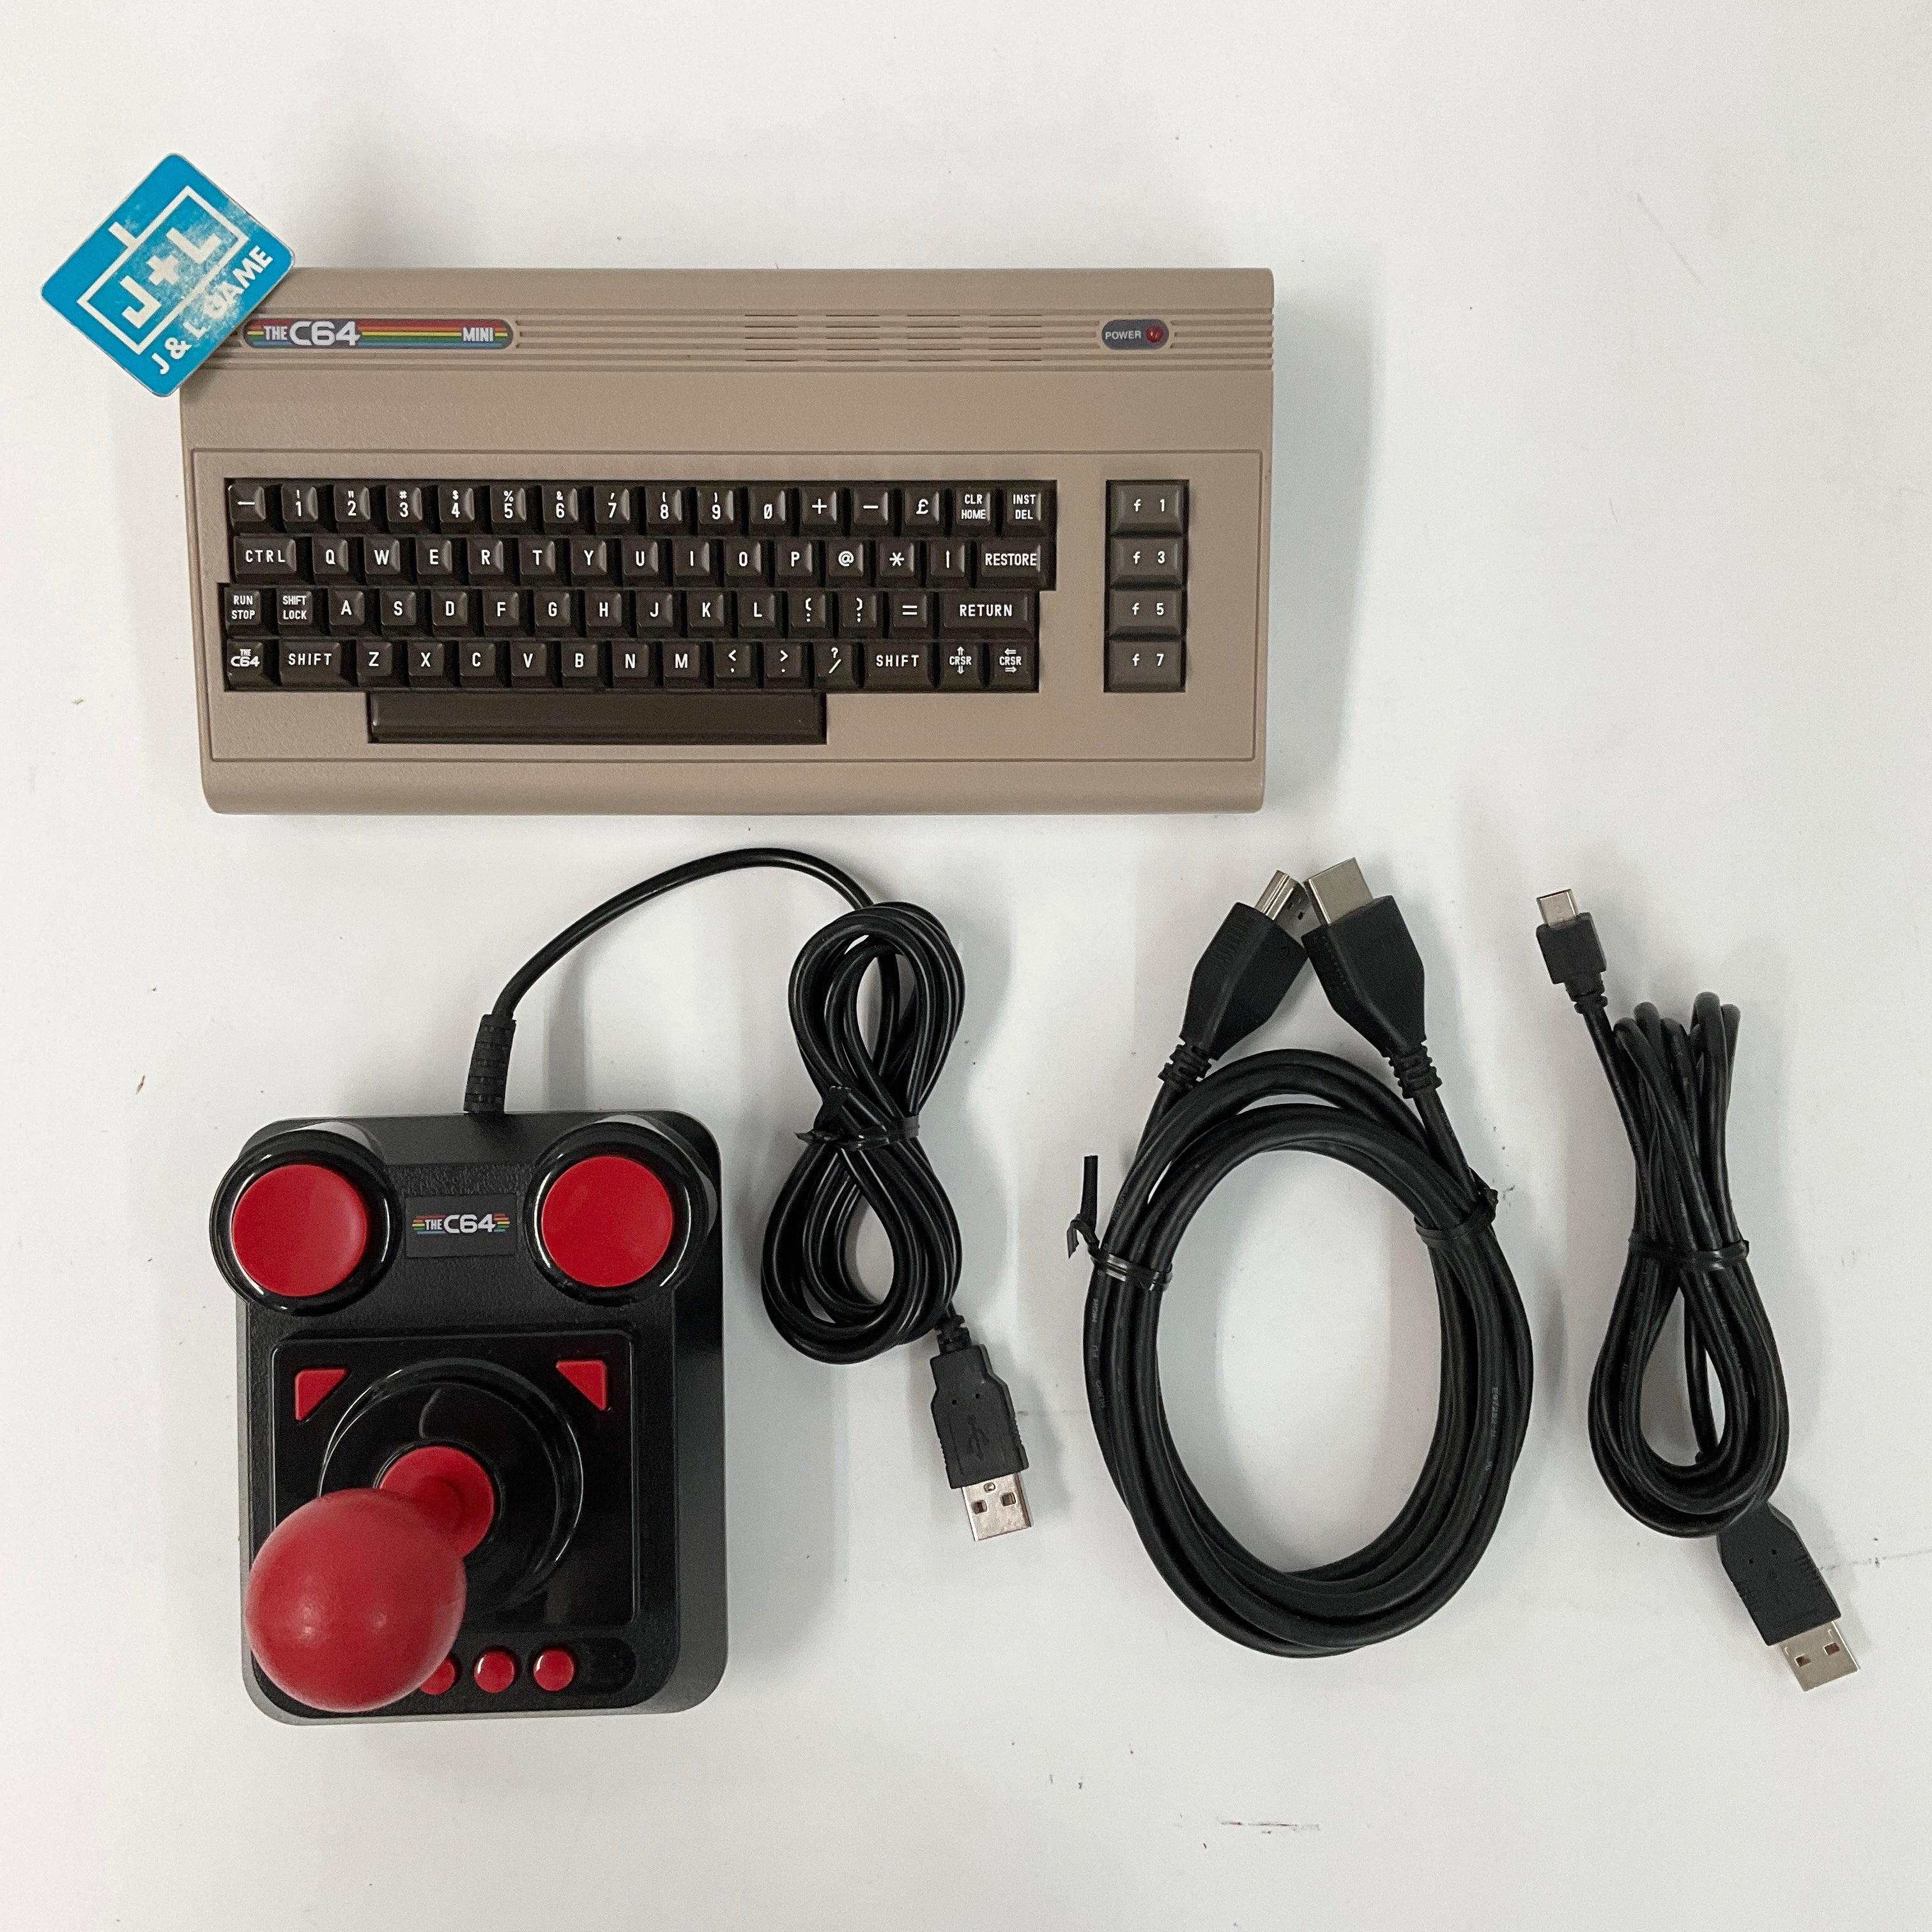 Retrogames The C64 Mini - (C64) Commodore 64 [Pre-Owned] Video Games retrogames   